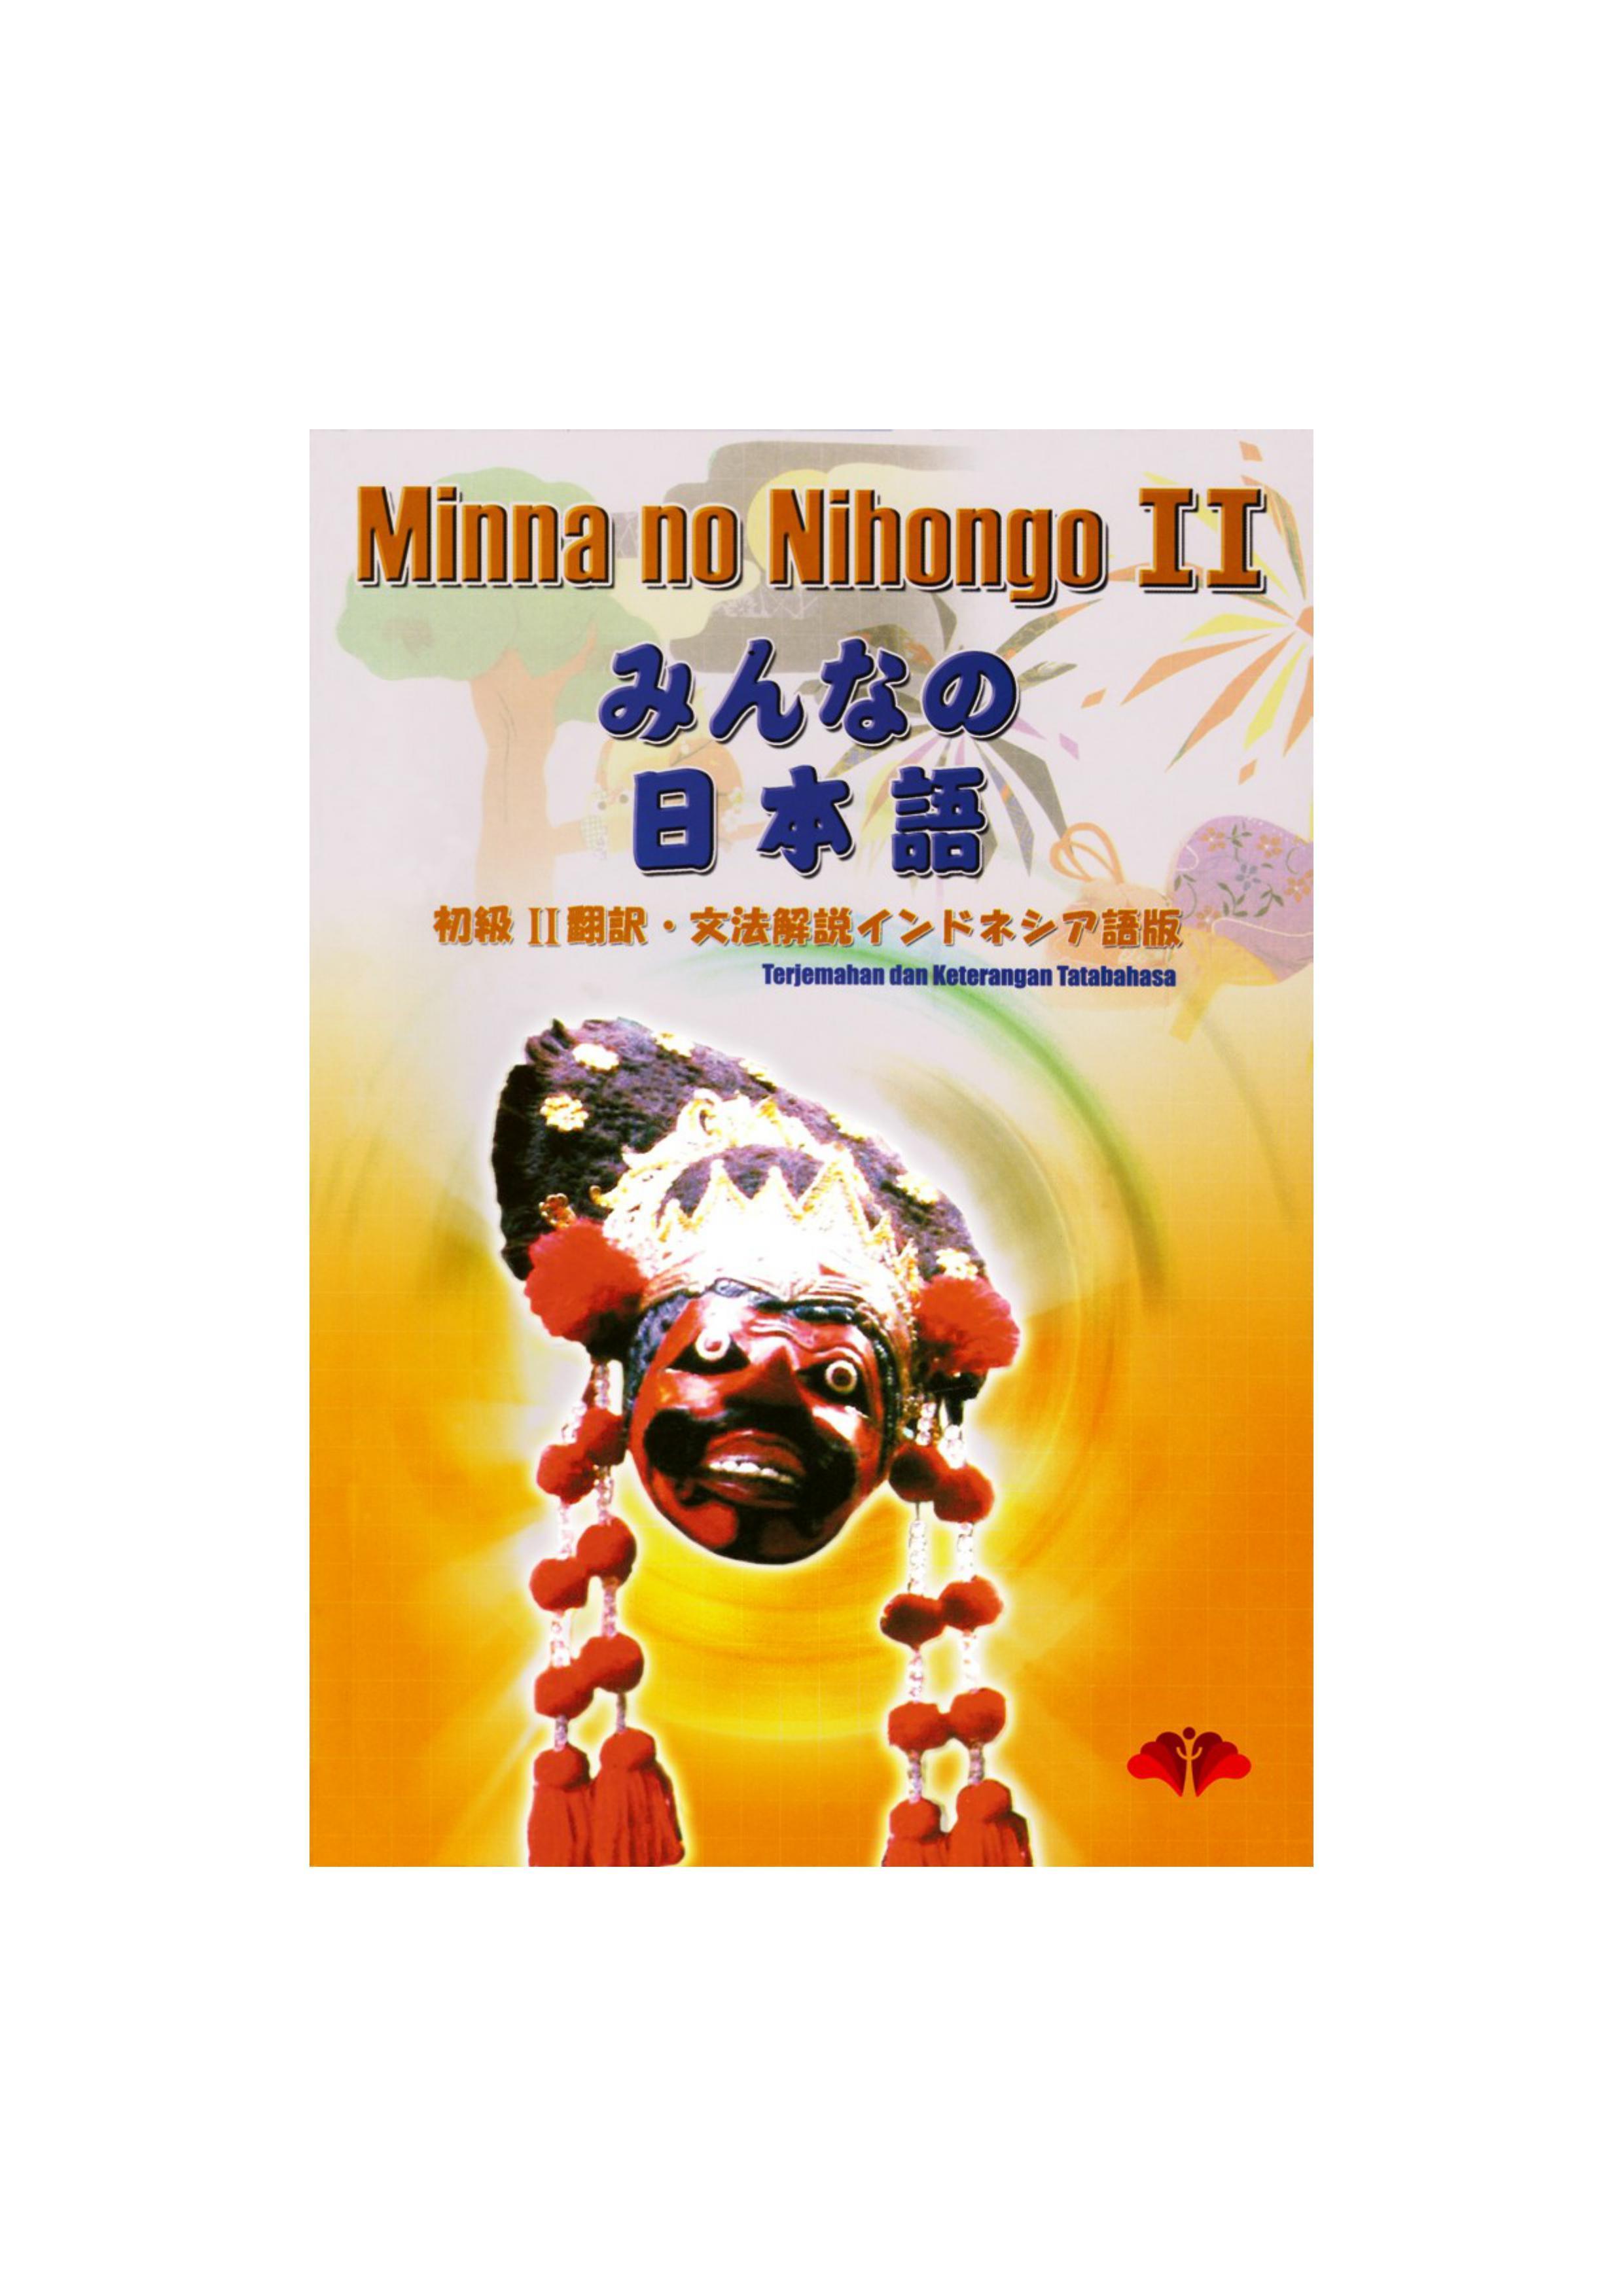 minna no nihongo chukyu ebook torrents free